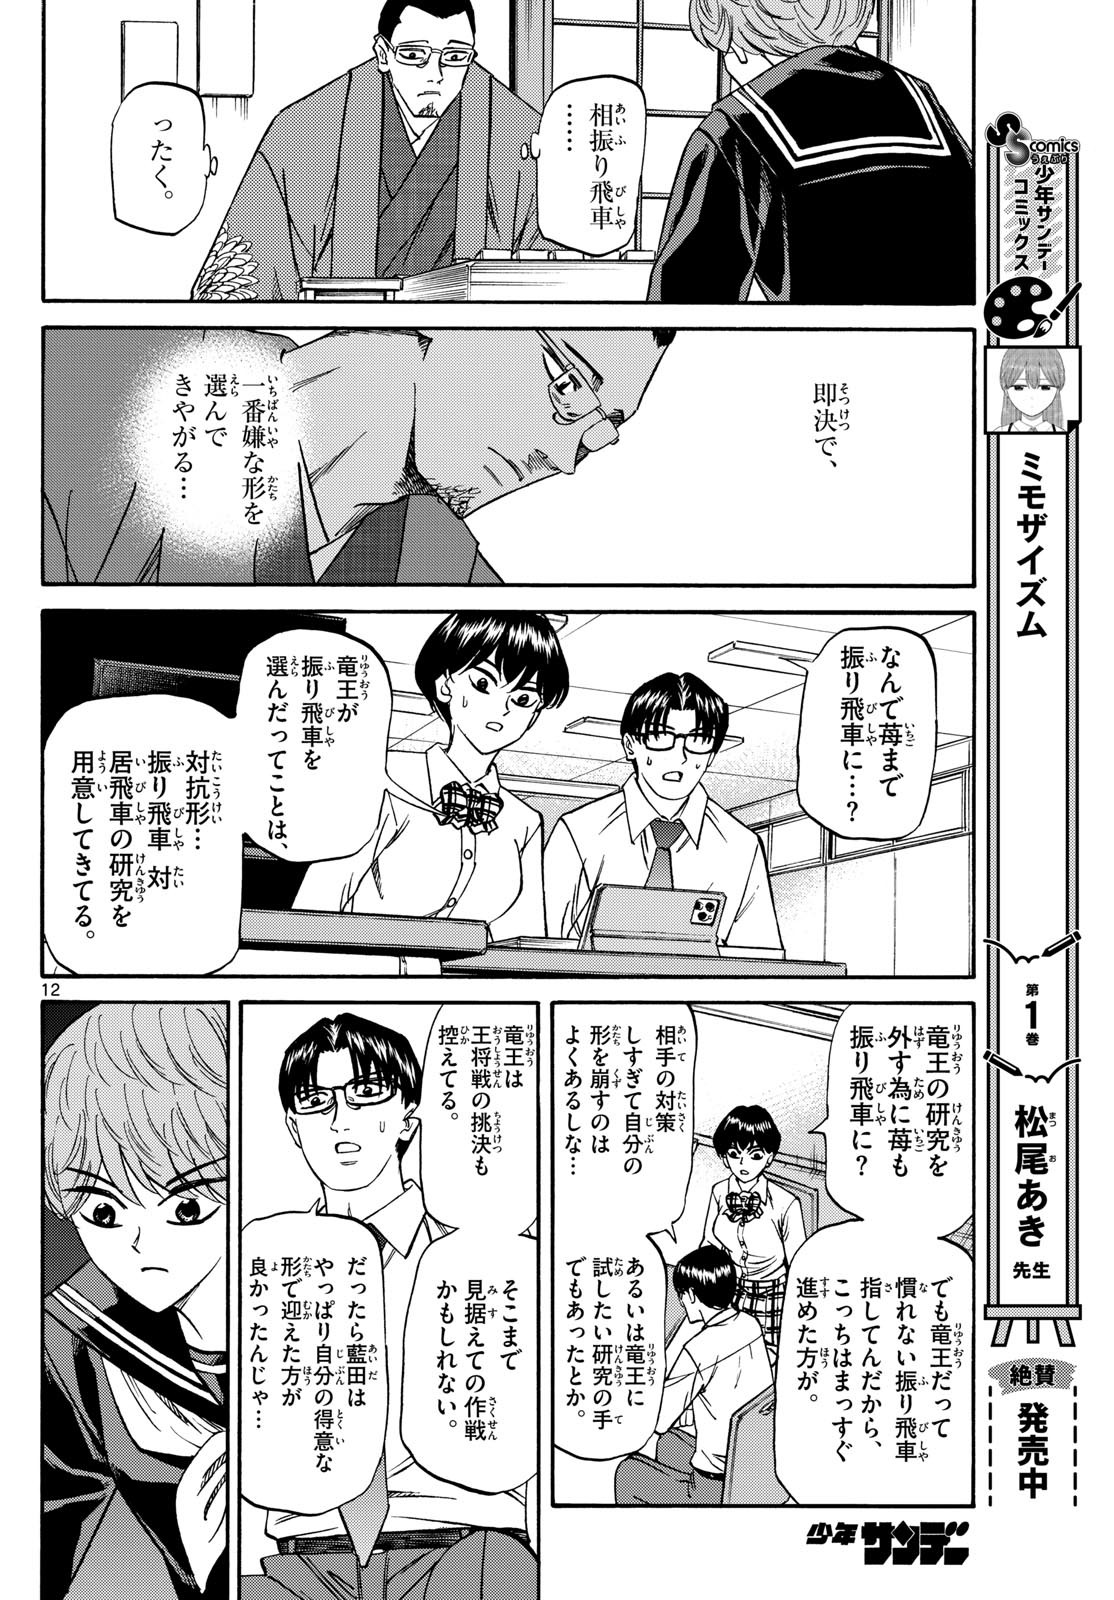 Ryu-to-Ichigo - Chapter 162 - Page 12